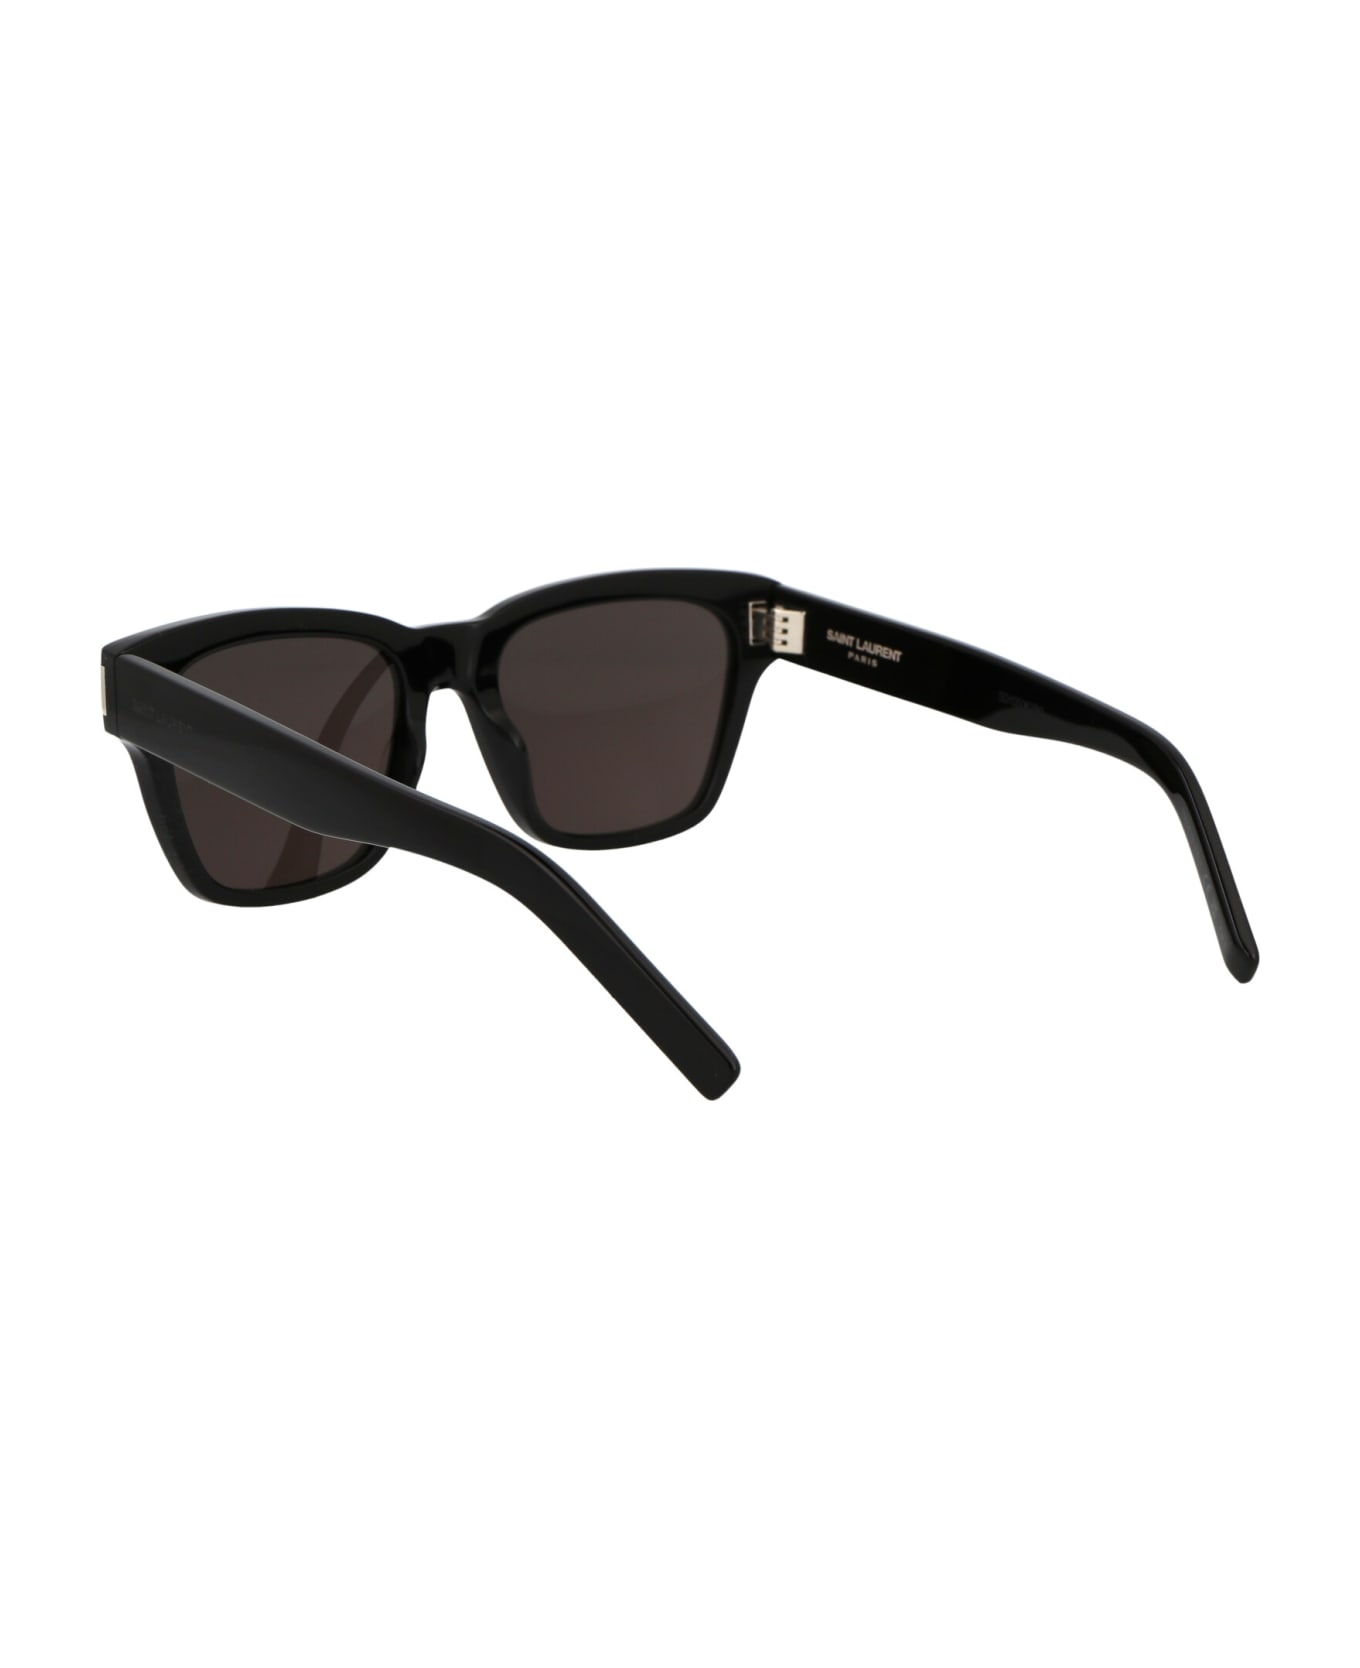 Saint Laurent Eyewear Sl 560 Sunglasses - 001 BLACK BLACK BLACK サングラス